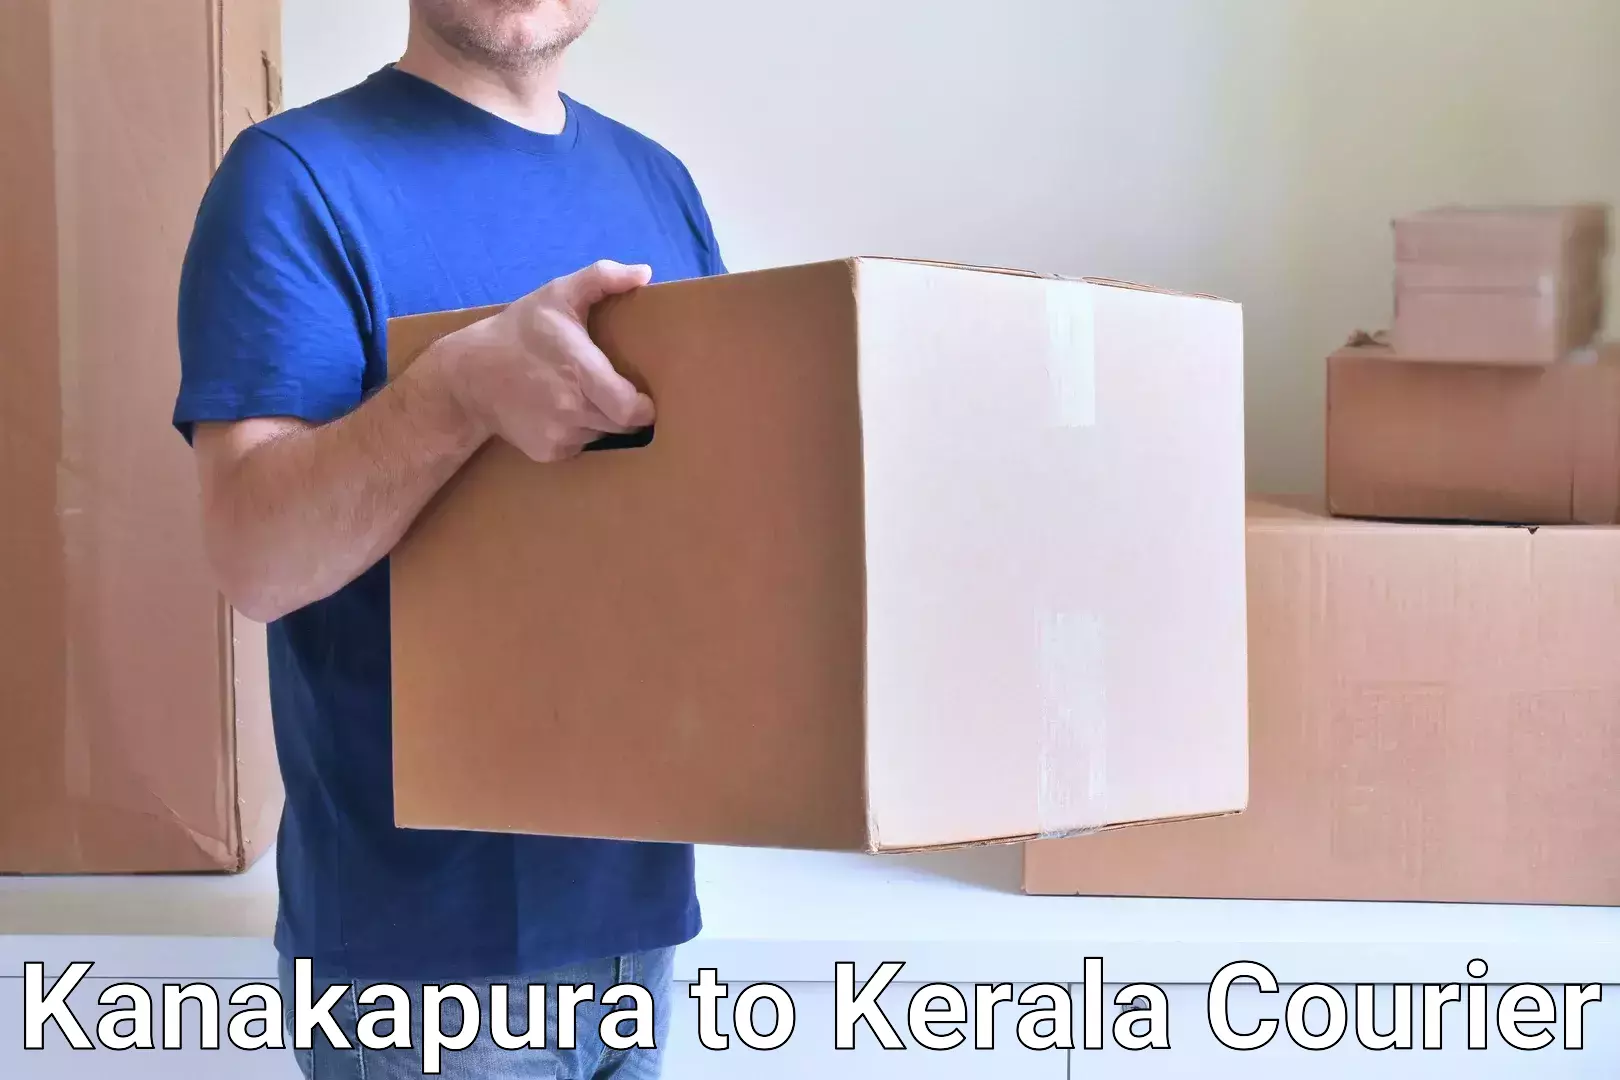 24/7 courier service Kanakapura to Mahe